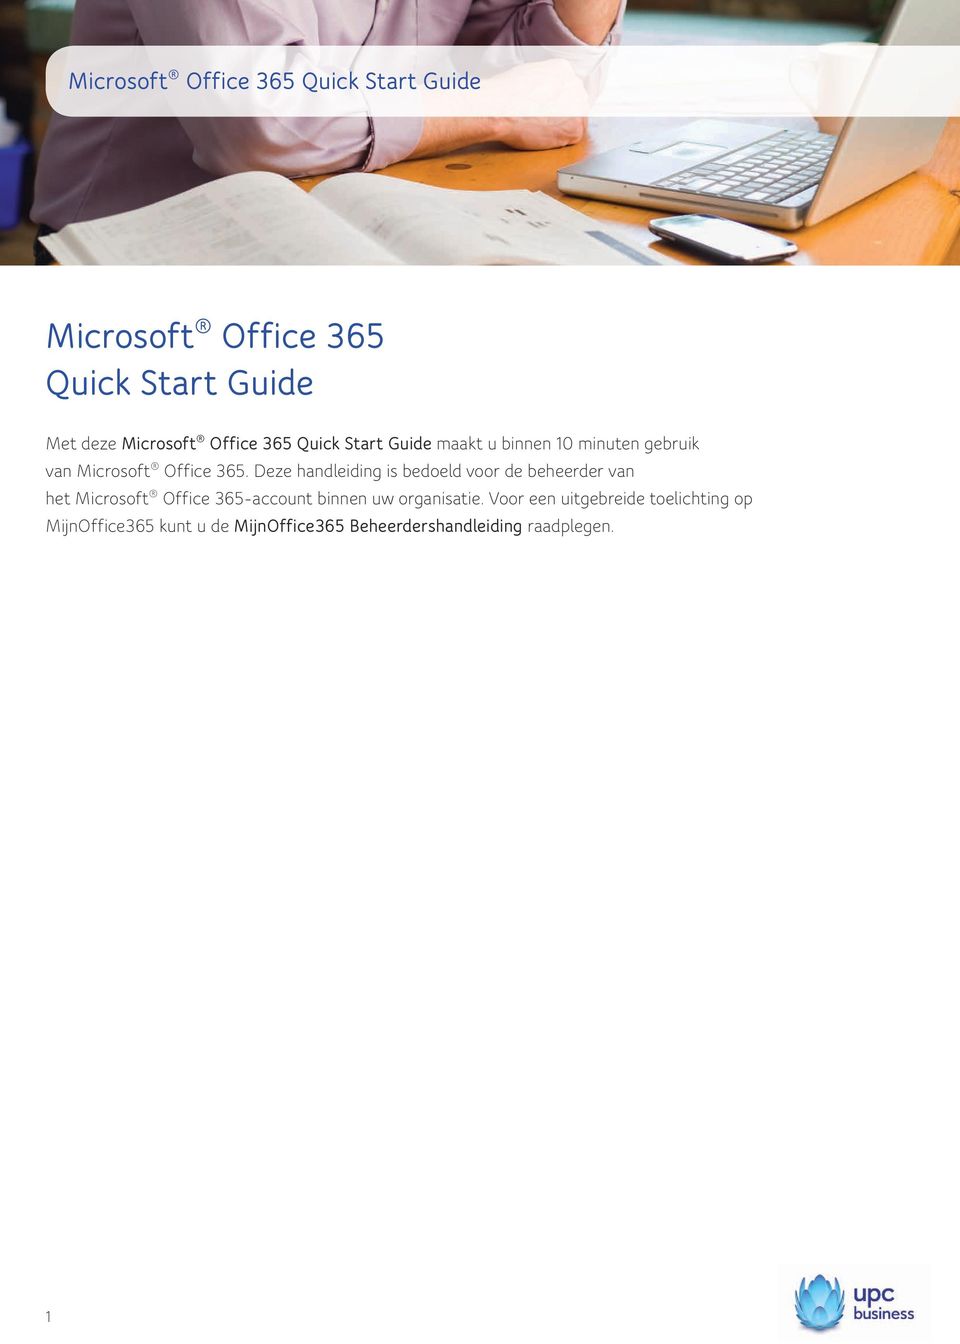 Deze handleiding is bedoeld voor de beheerder van het Microsoft Office 365-account binnen